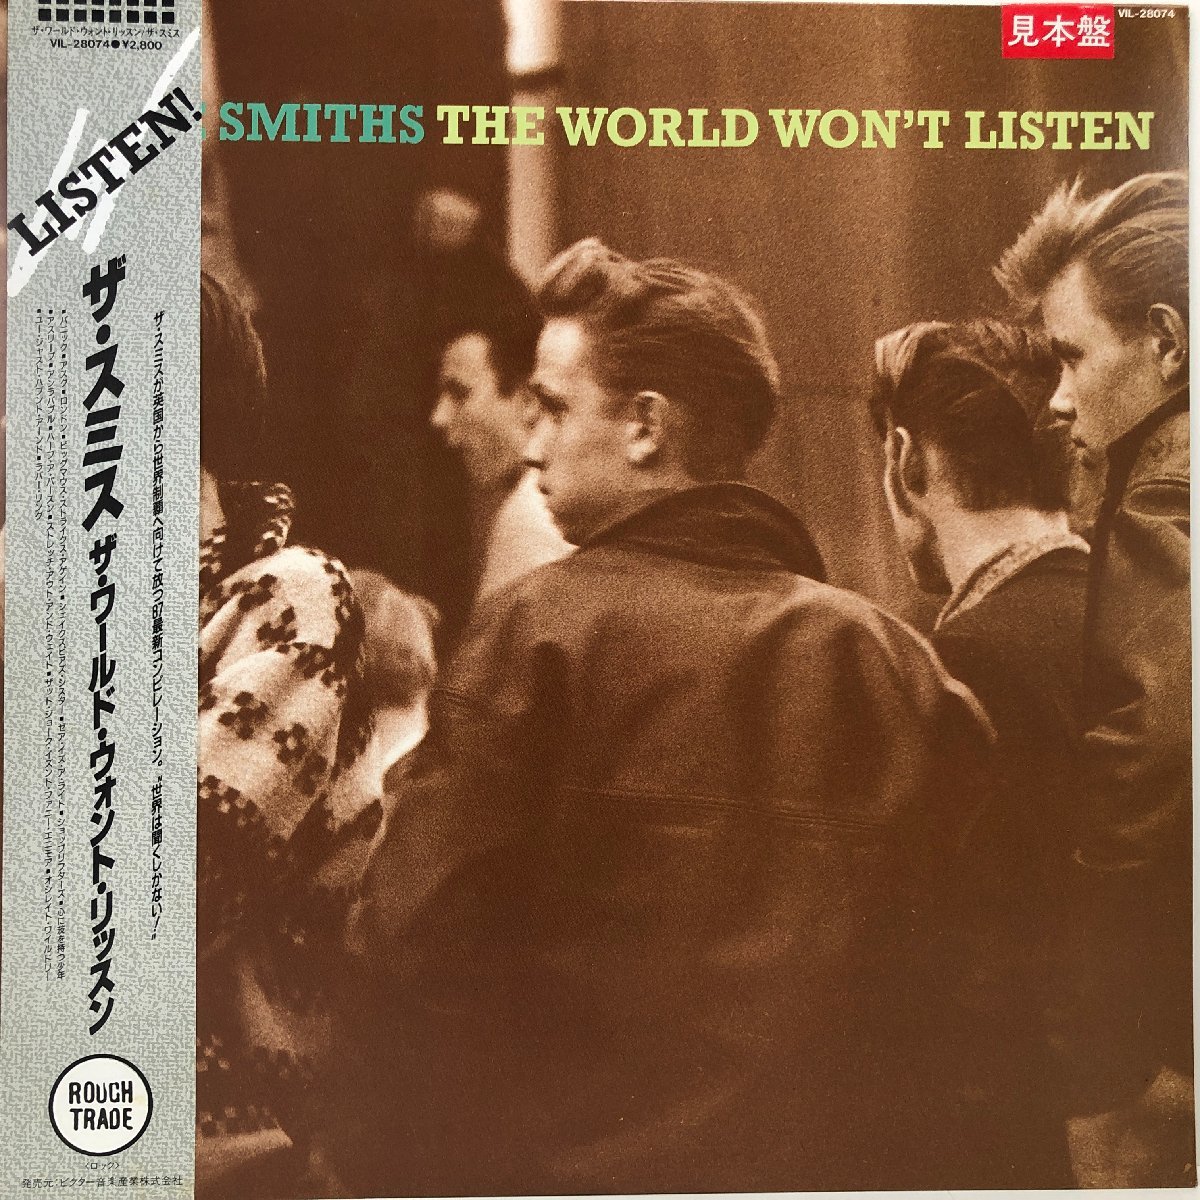 【LP】ザ・スミス / ザ・ワールド・ウォント・リッスン THE WORLD WON'T LISTEN / THE SMITH / ROUGH TRADE VIL-28074